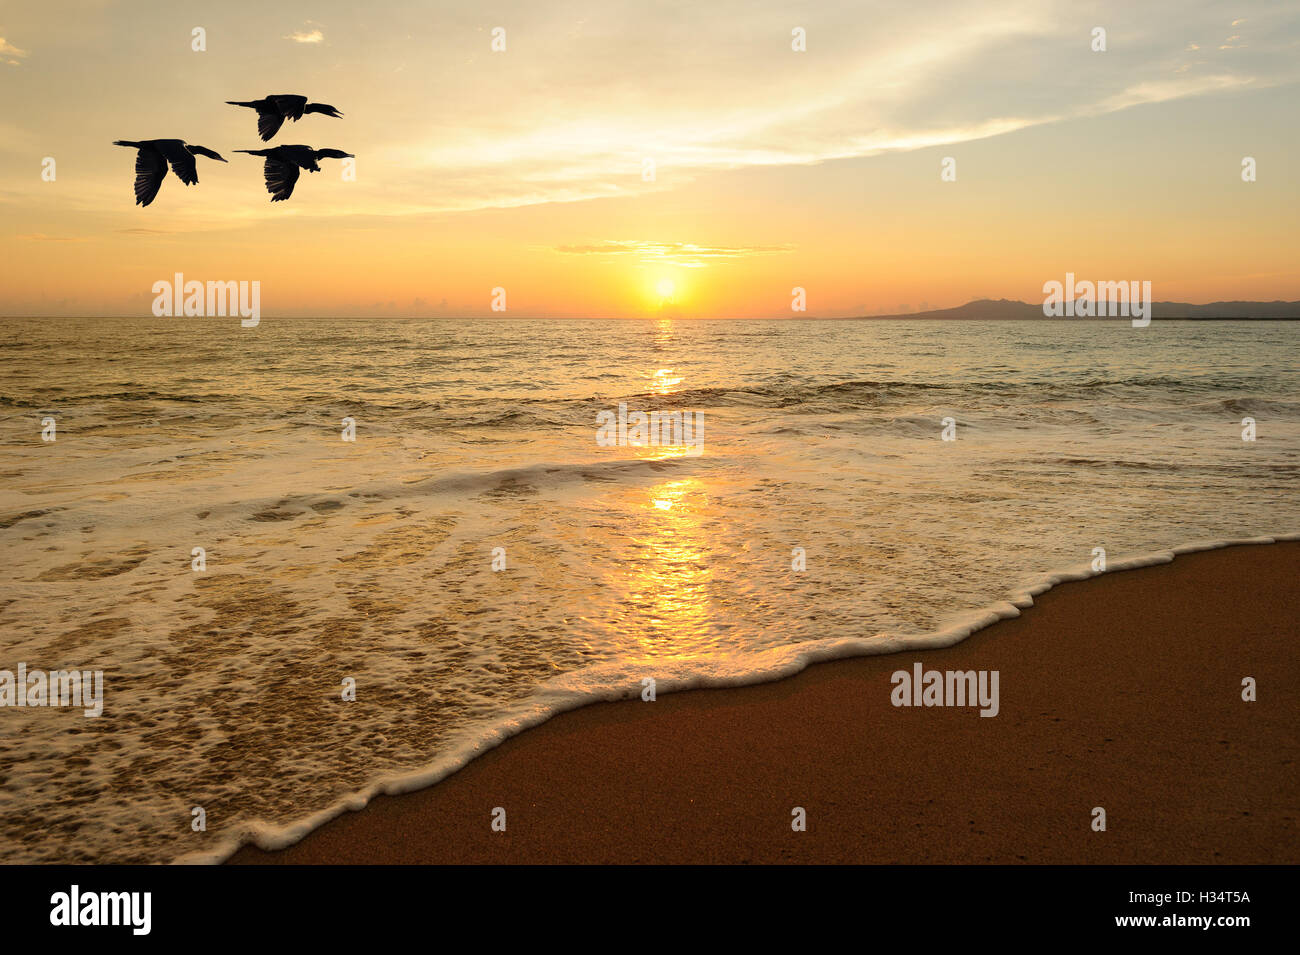 Gli uccelli volare è tre uccelli marini volare sull'acqua come il sole tramonta sull'oceano colorato orizzonte. Foto Stock